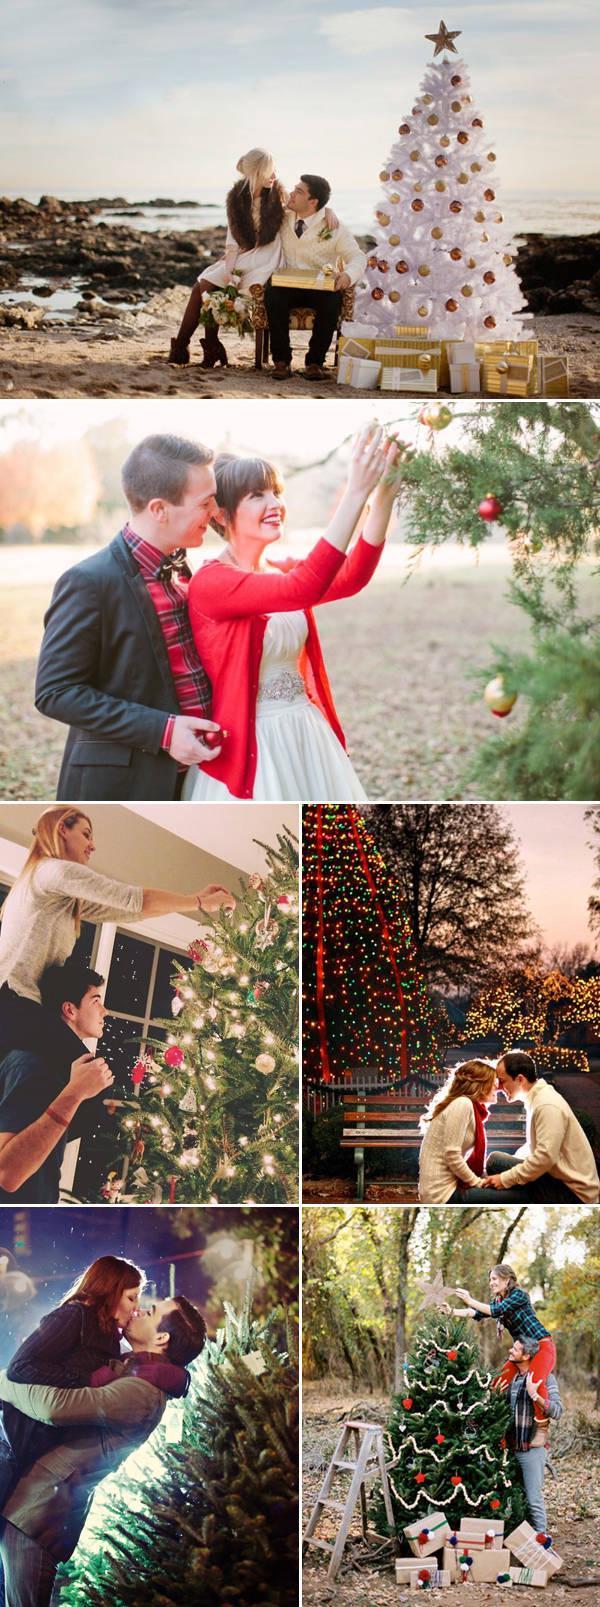 รูปภาพ:http://www.praisewedding.com/wp-content/uploads/2014/12/christmaslovers04-tree.jpg